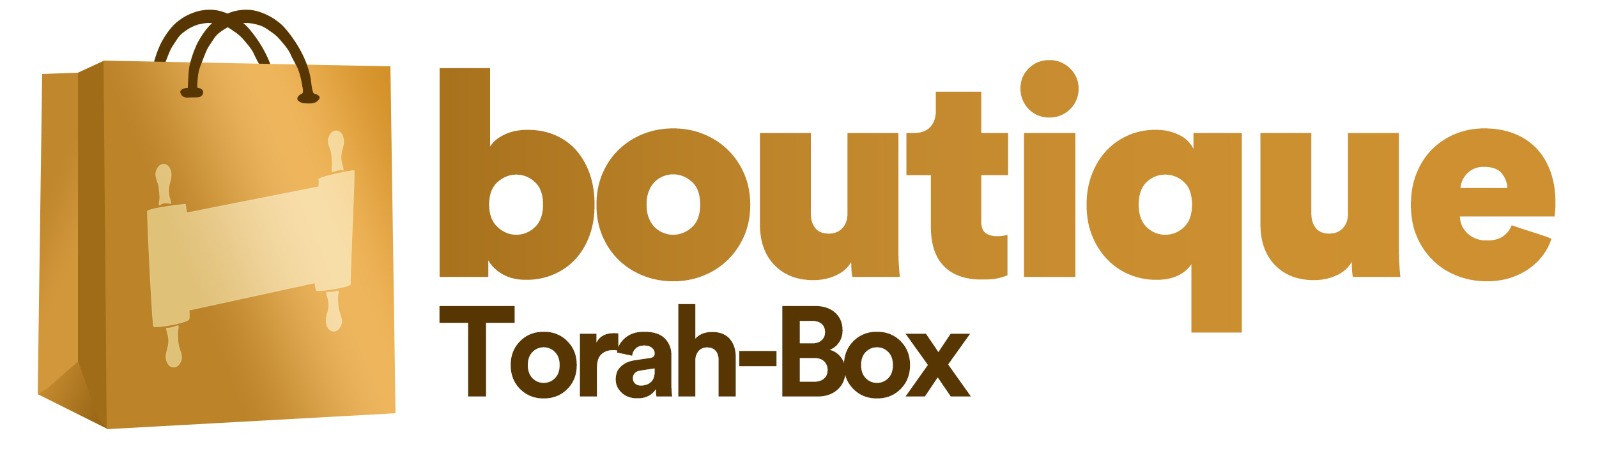 Boutique Torah-Box